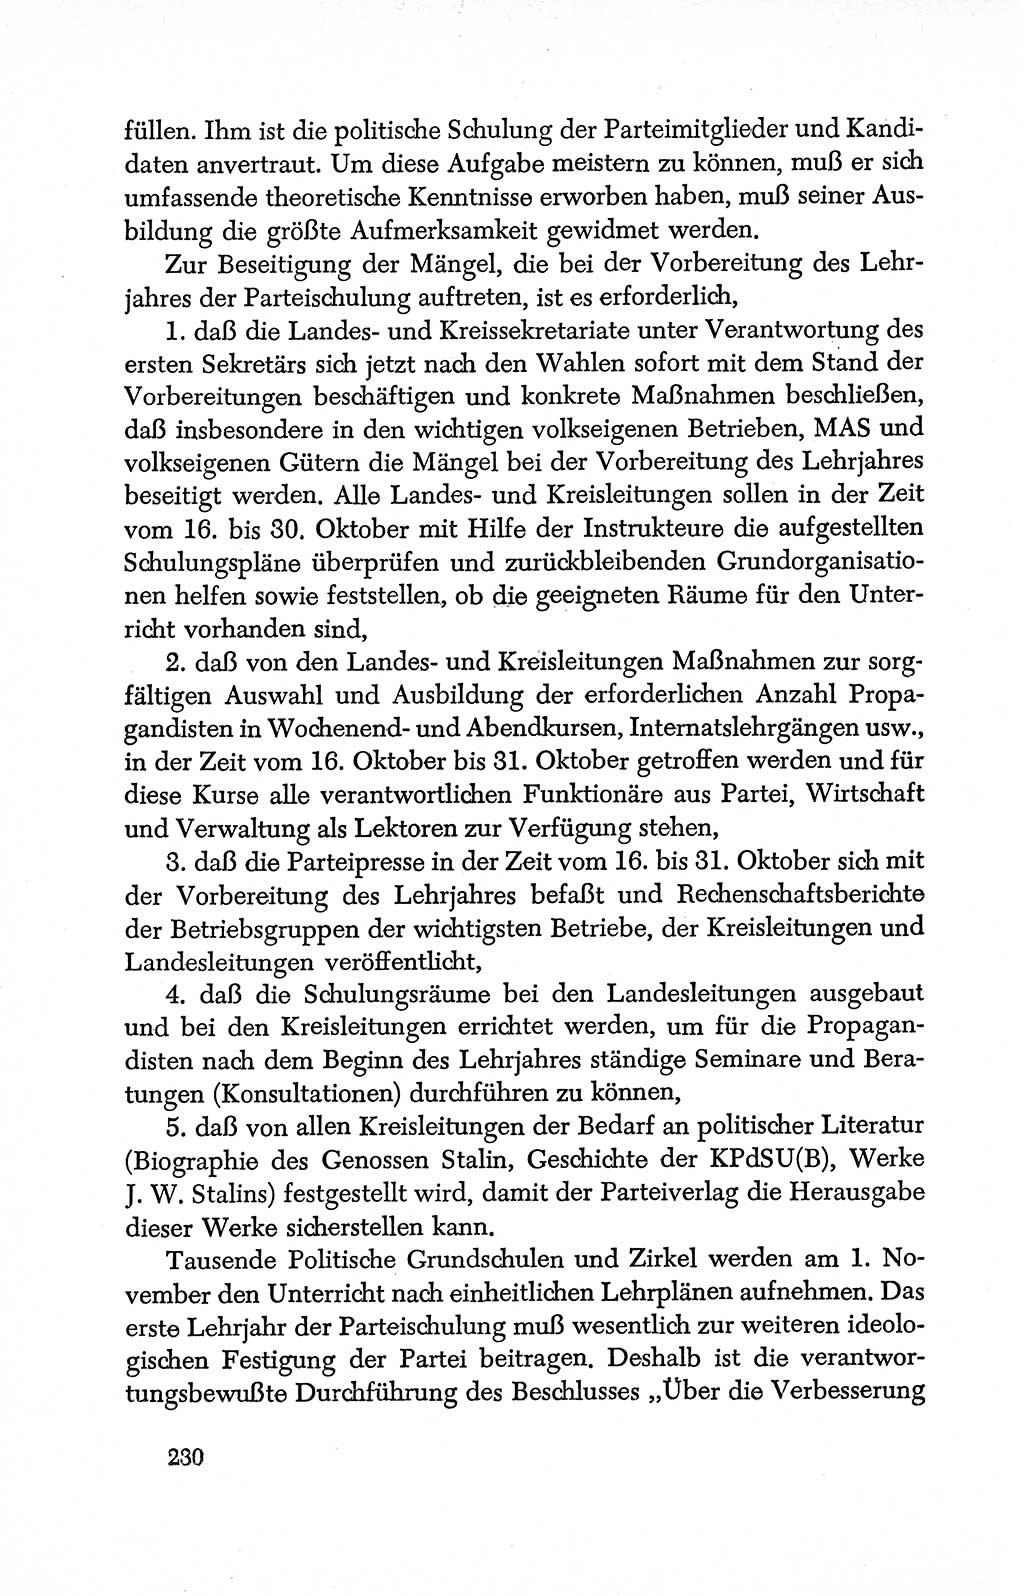 Dokumente der Sozialistischen Einheitspartei Deutschlands (SED) [Deutsche Demokratische Republik (DDR)] 1950-1952, Seite 230 (Dok. SED DDR 1950-1952, S. 230)